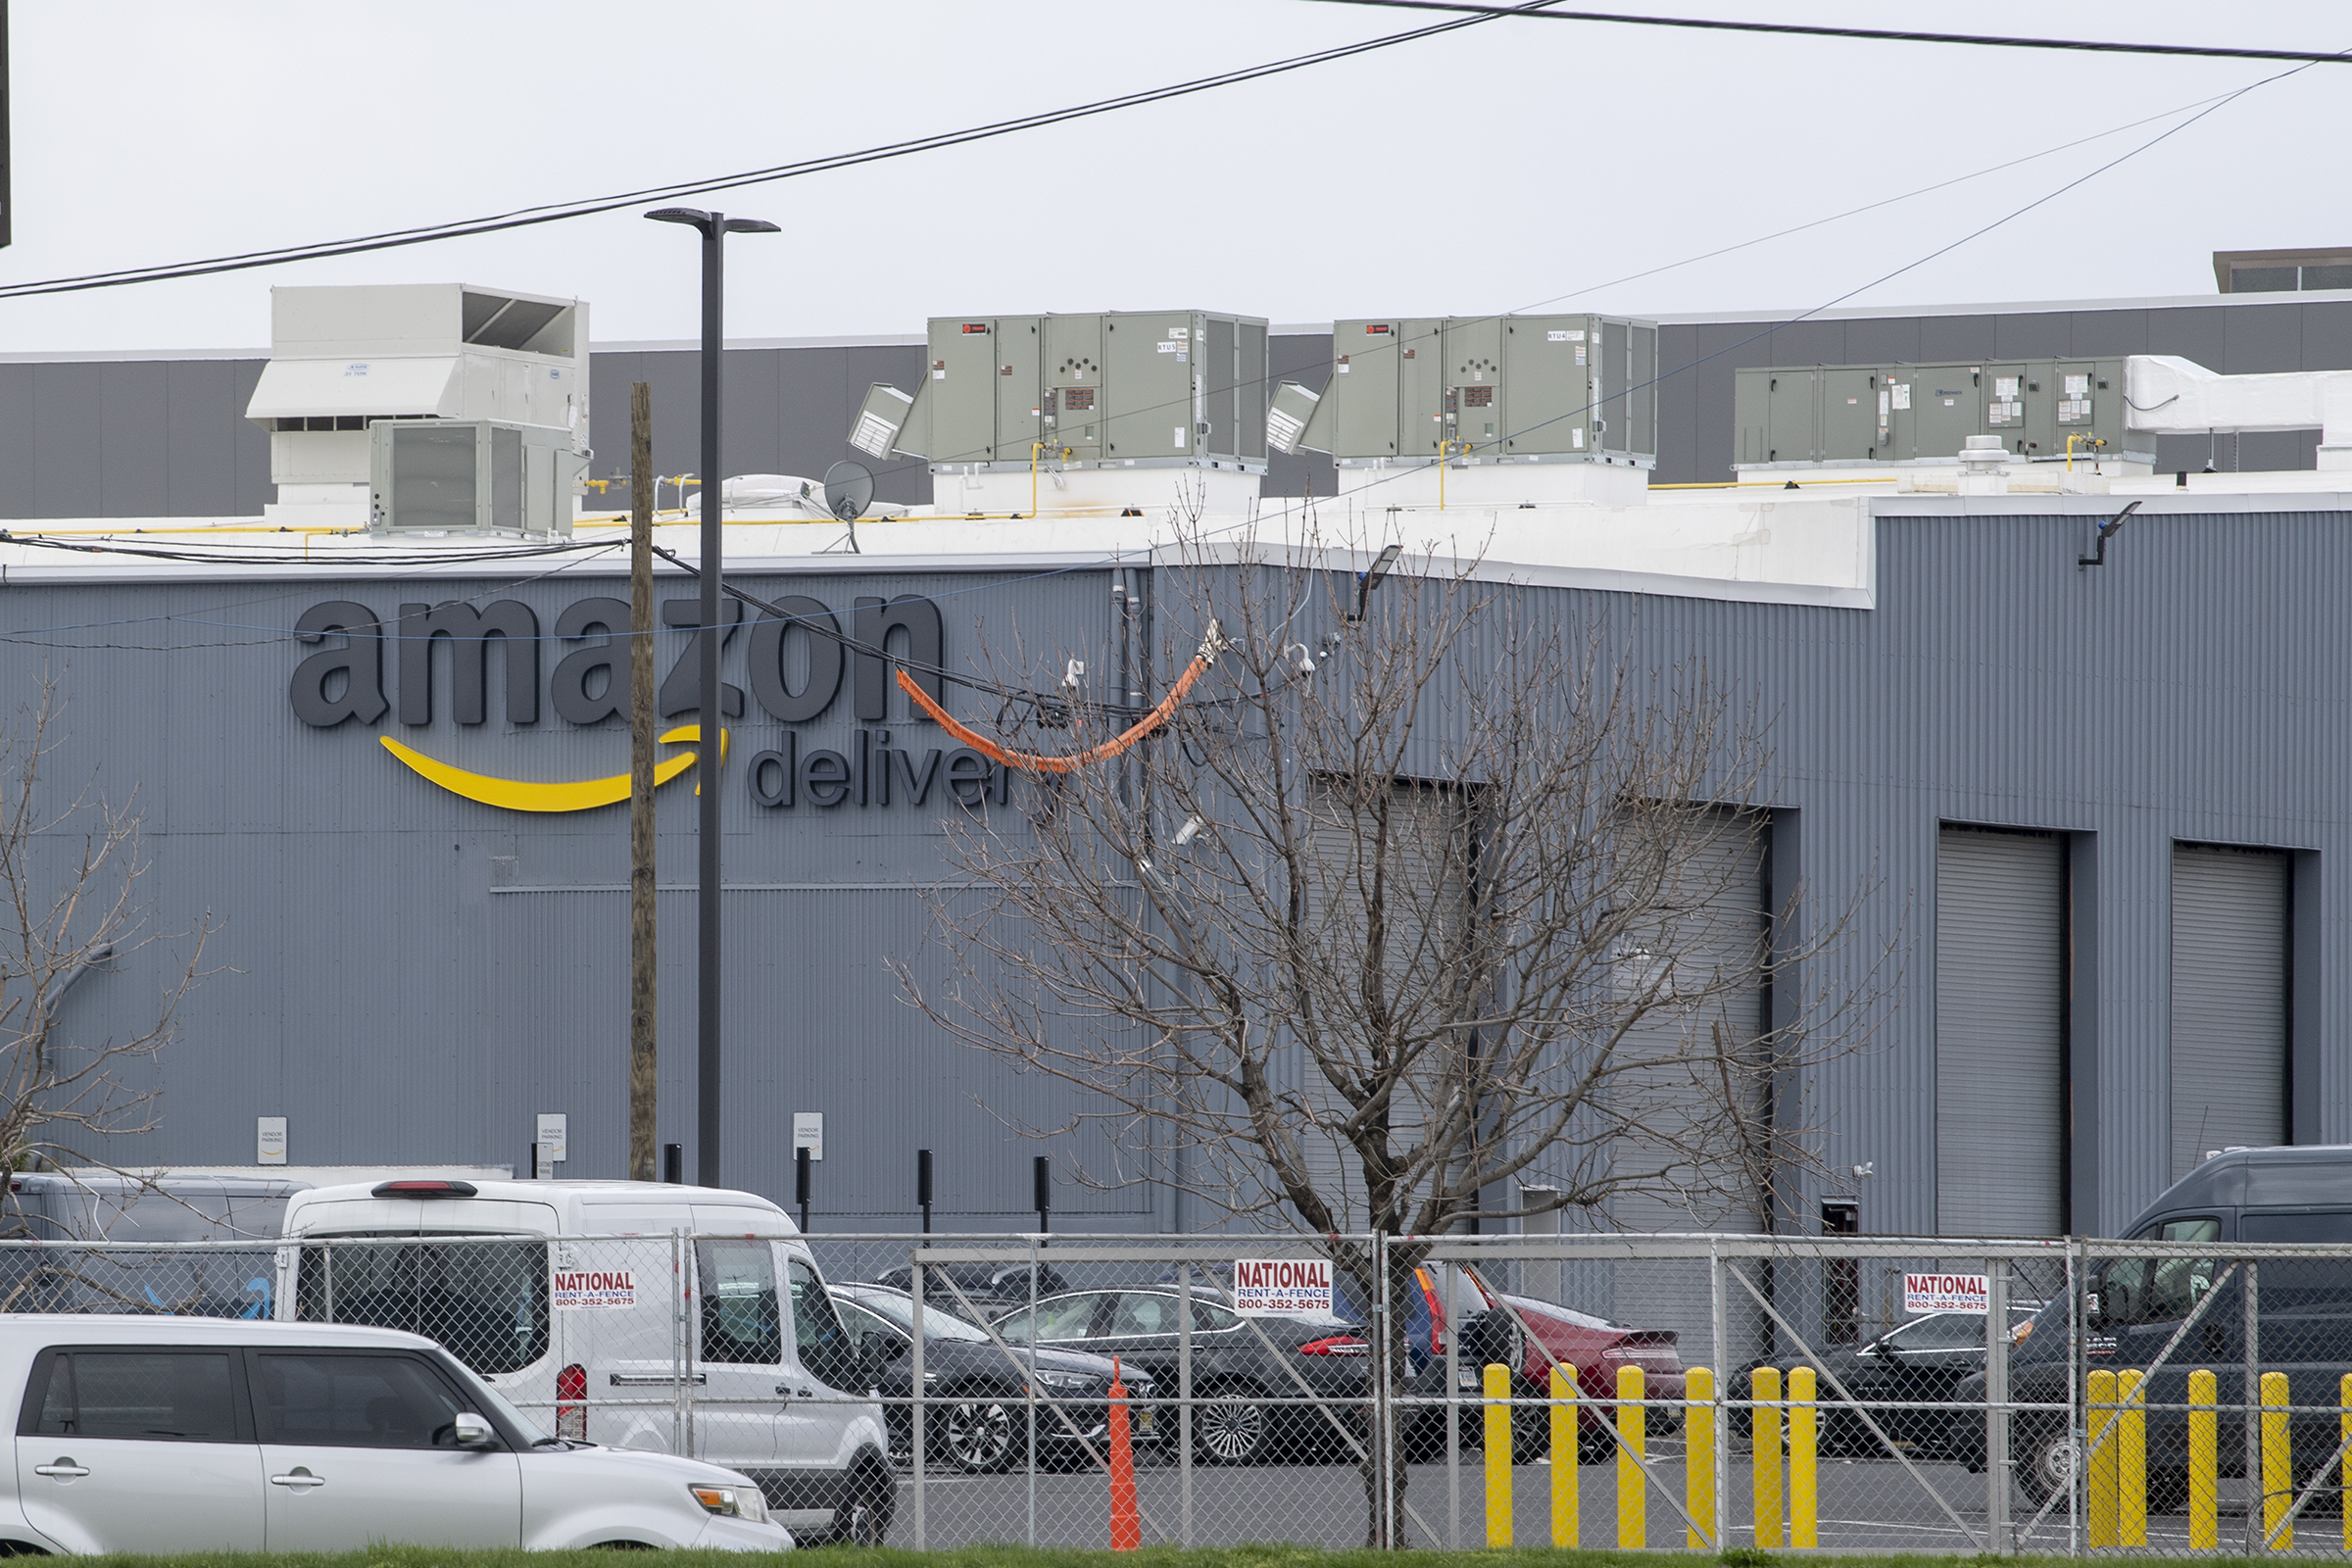 Amazon Now Has 50 Warehouses Ringing The Philadelphia Area